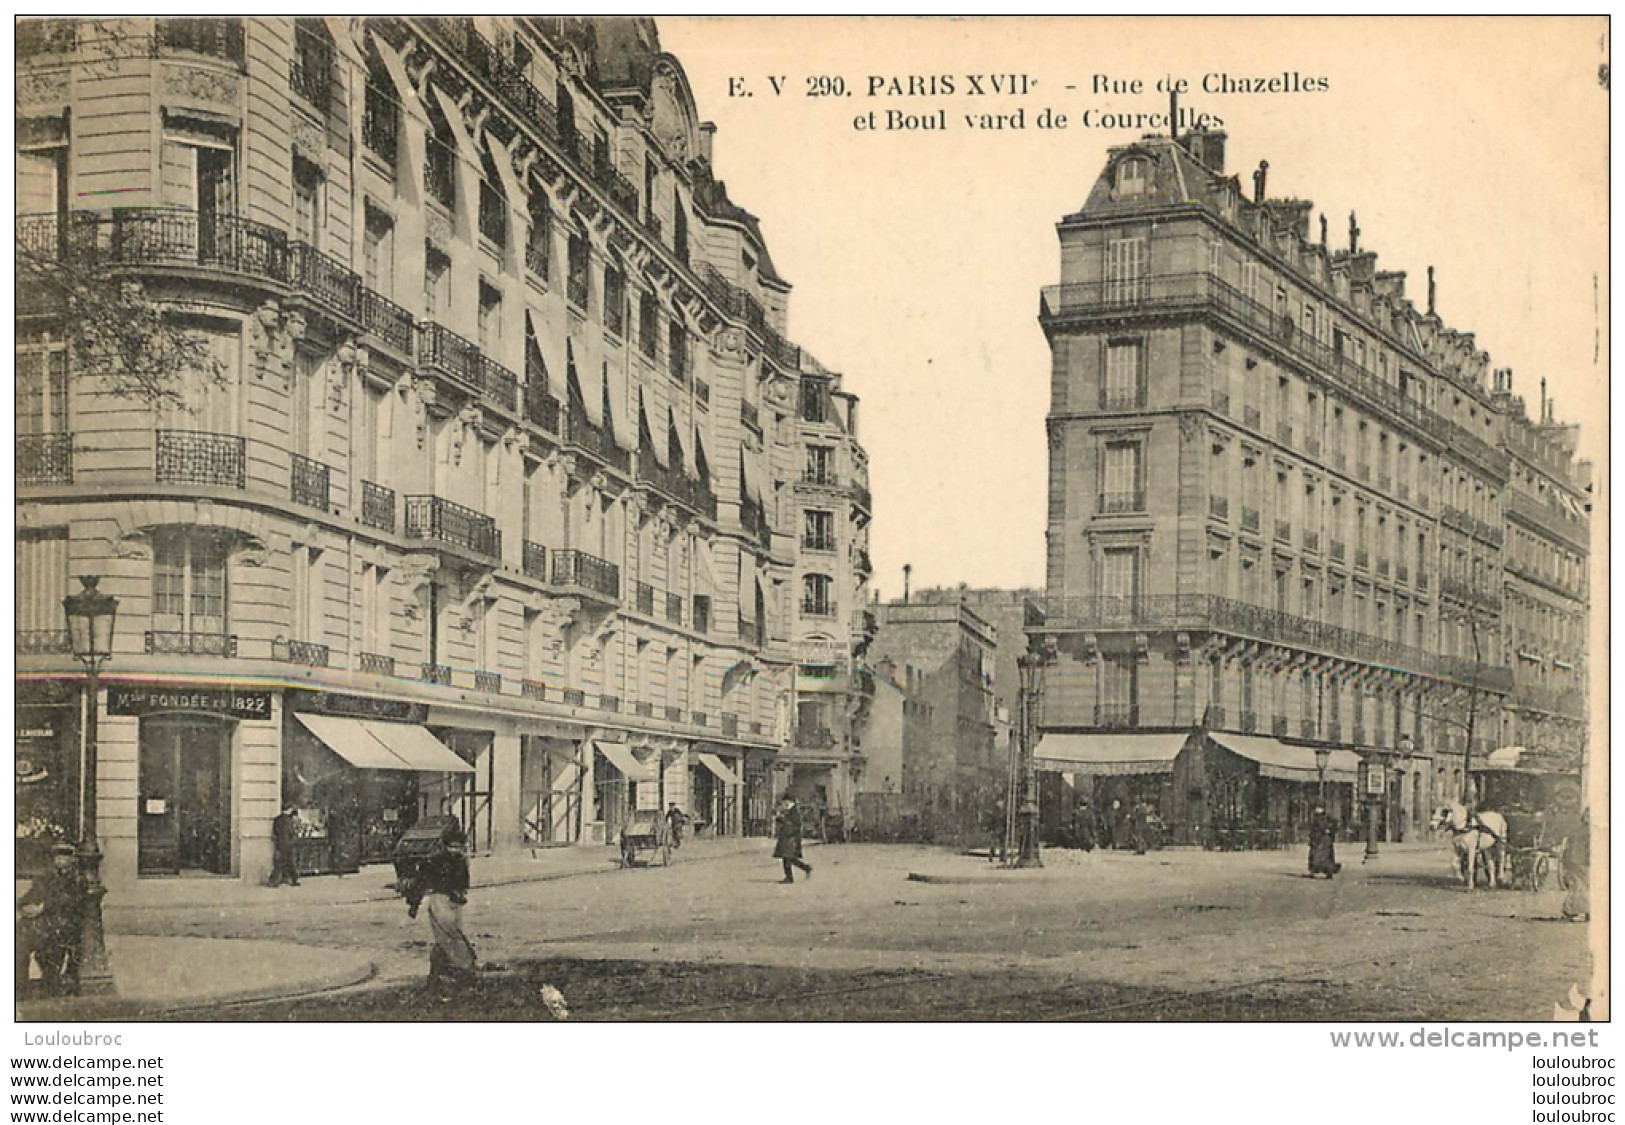 RARE PARIS  XVII RUE DE CHAZELLES ET BOULEVARD DE COURCELLES - Paris (17)